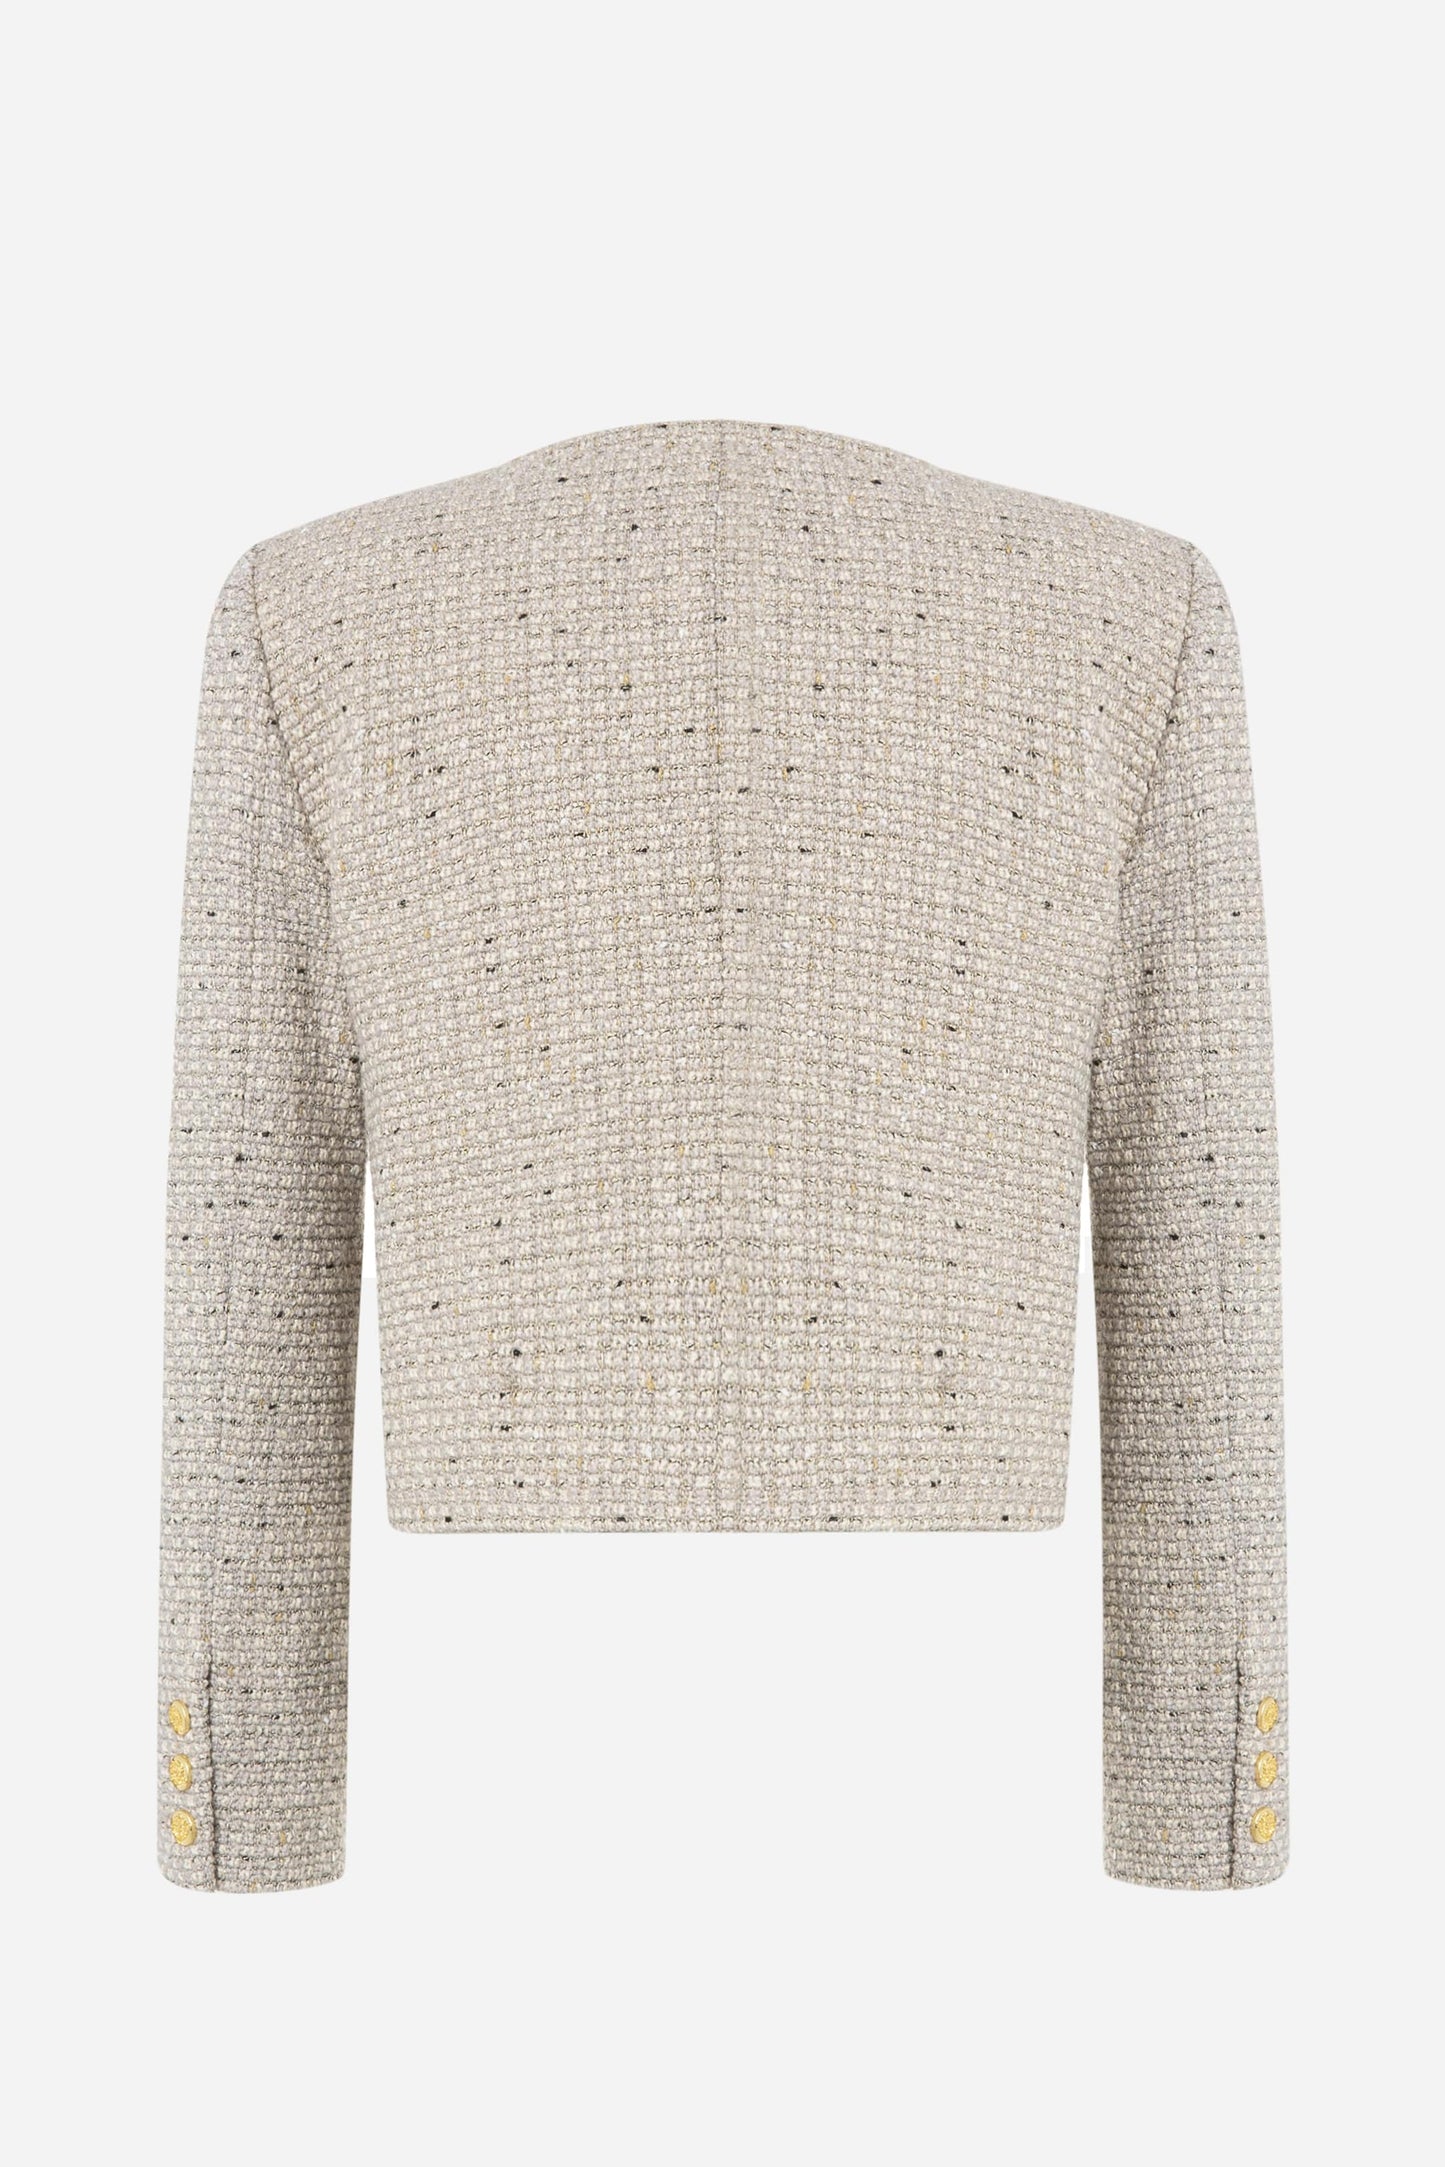 Soho Grey Tweed Jacket